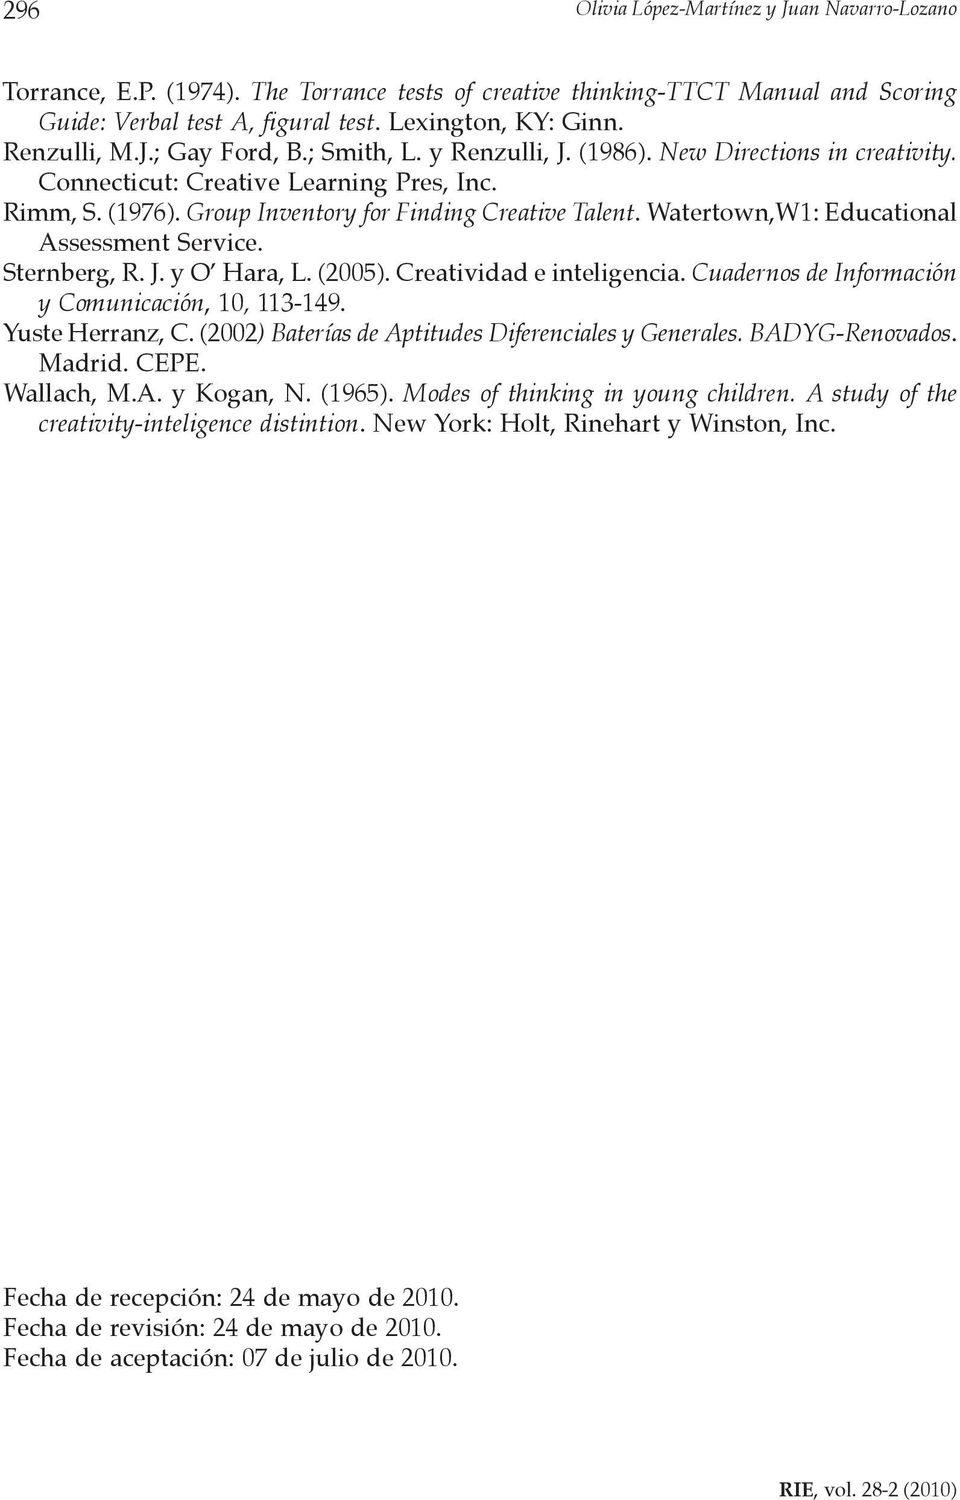 Watertown,W1: Educational Assessment Service. Sternberg, R. J. y O Hara, L. (2005). Creatividad e inteligencia. Cuadernos de Información y Comunicación, 10, 113-149. Yuste Herranz, C.